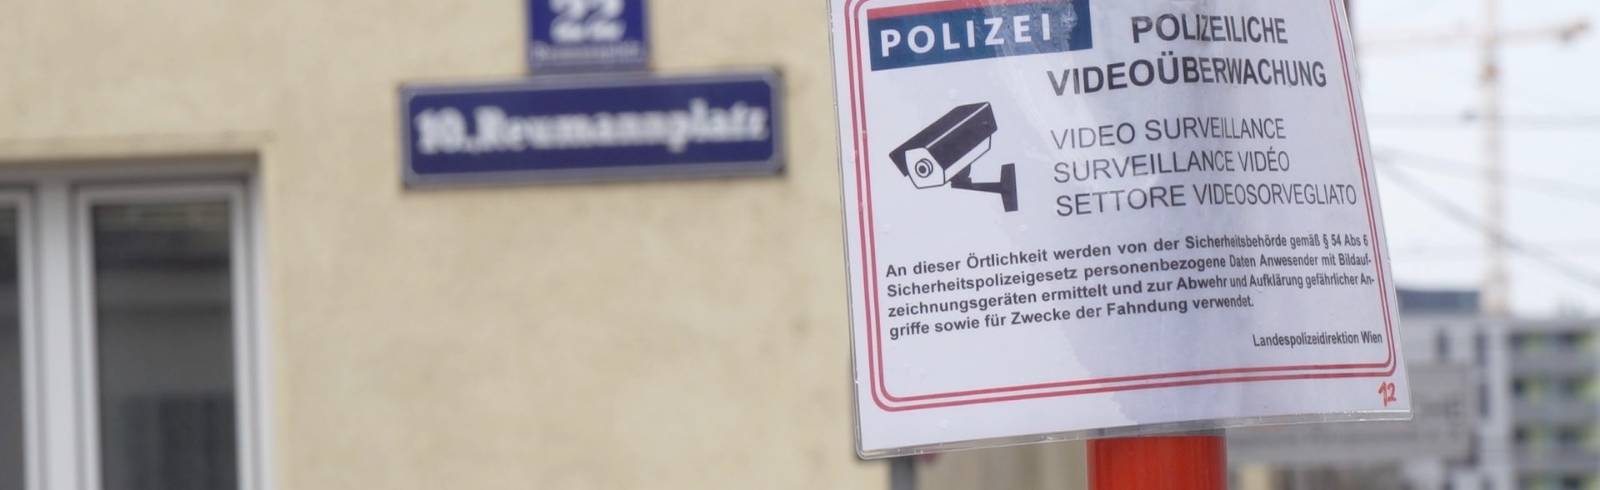 Bezirksflash: Videoüberwachung am Reumannplatz